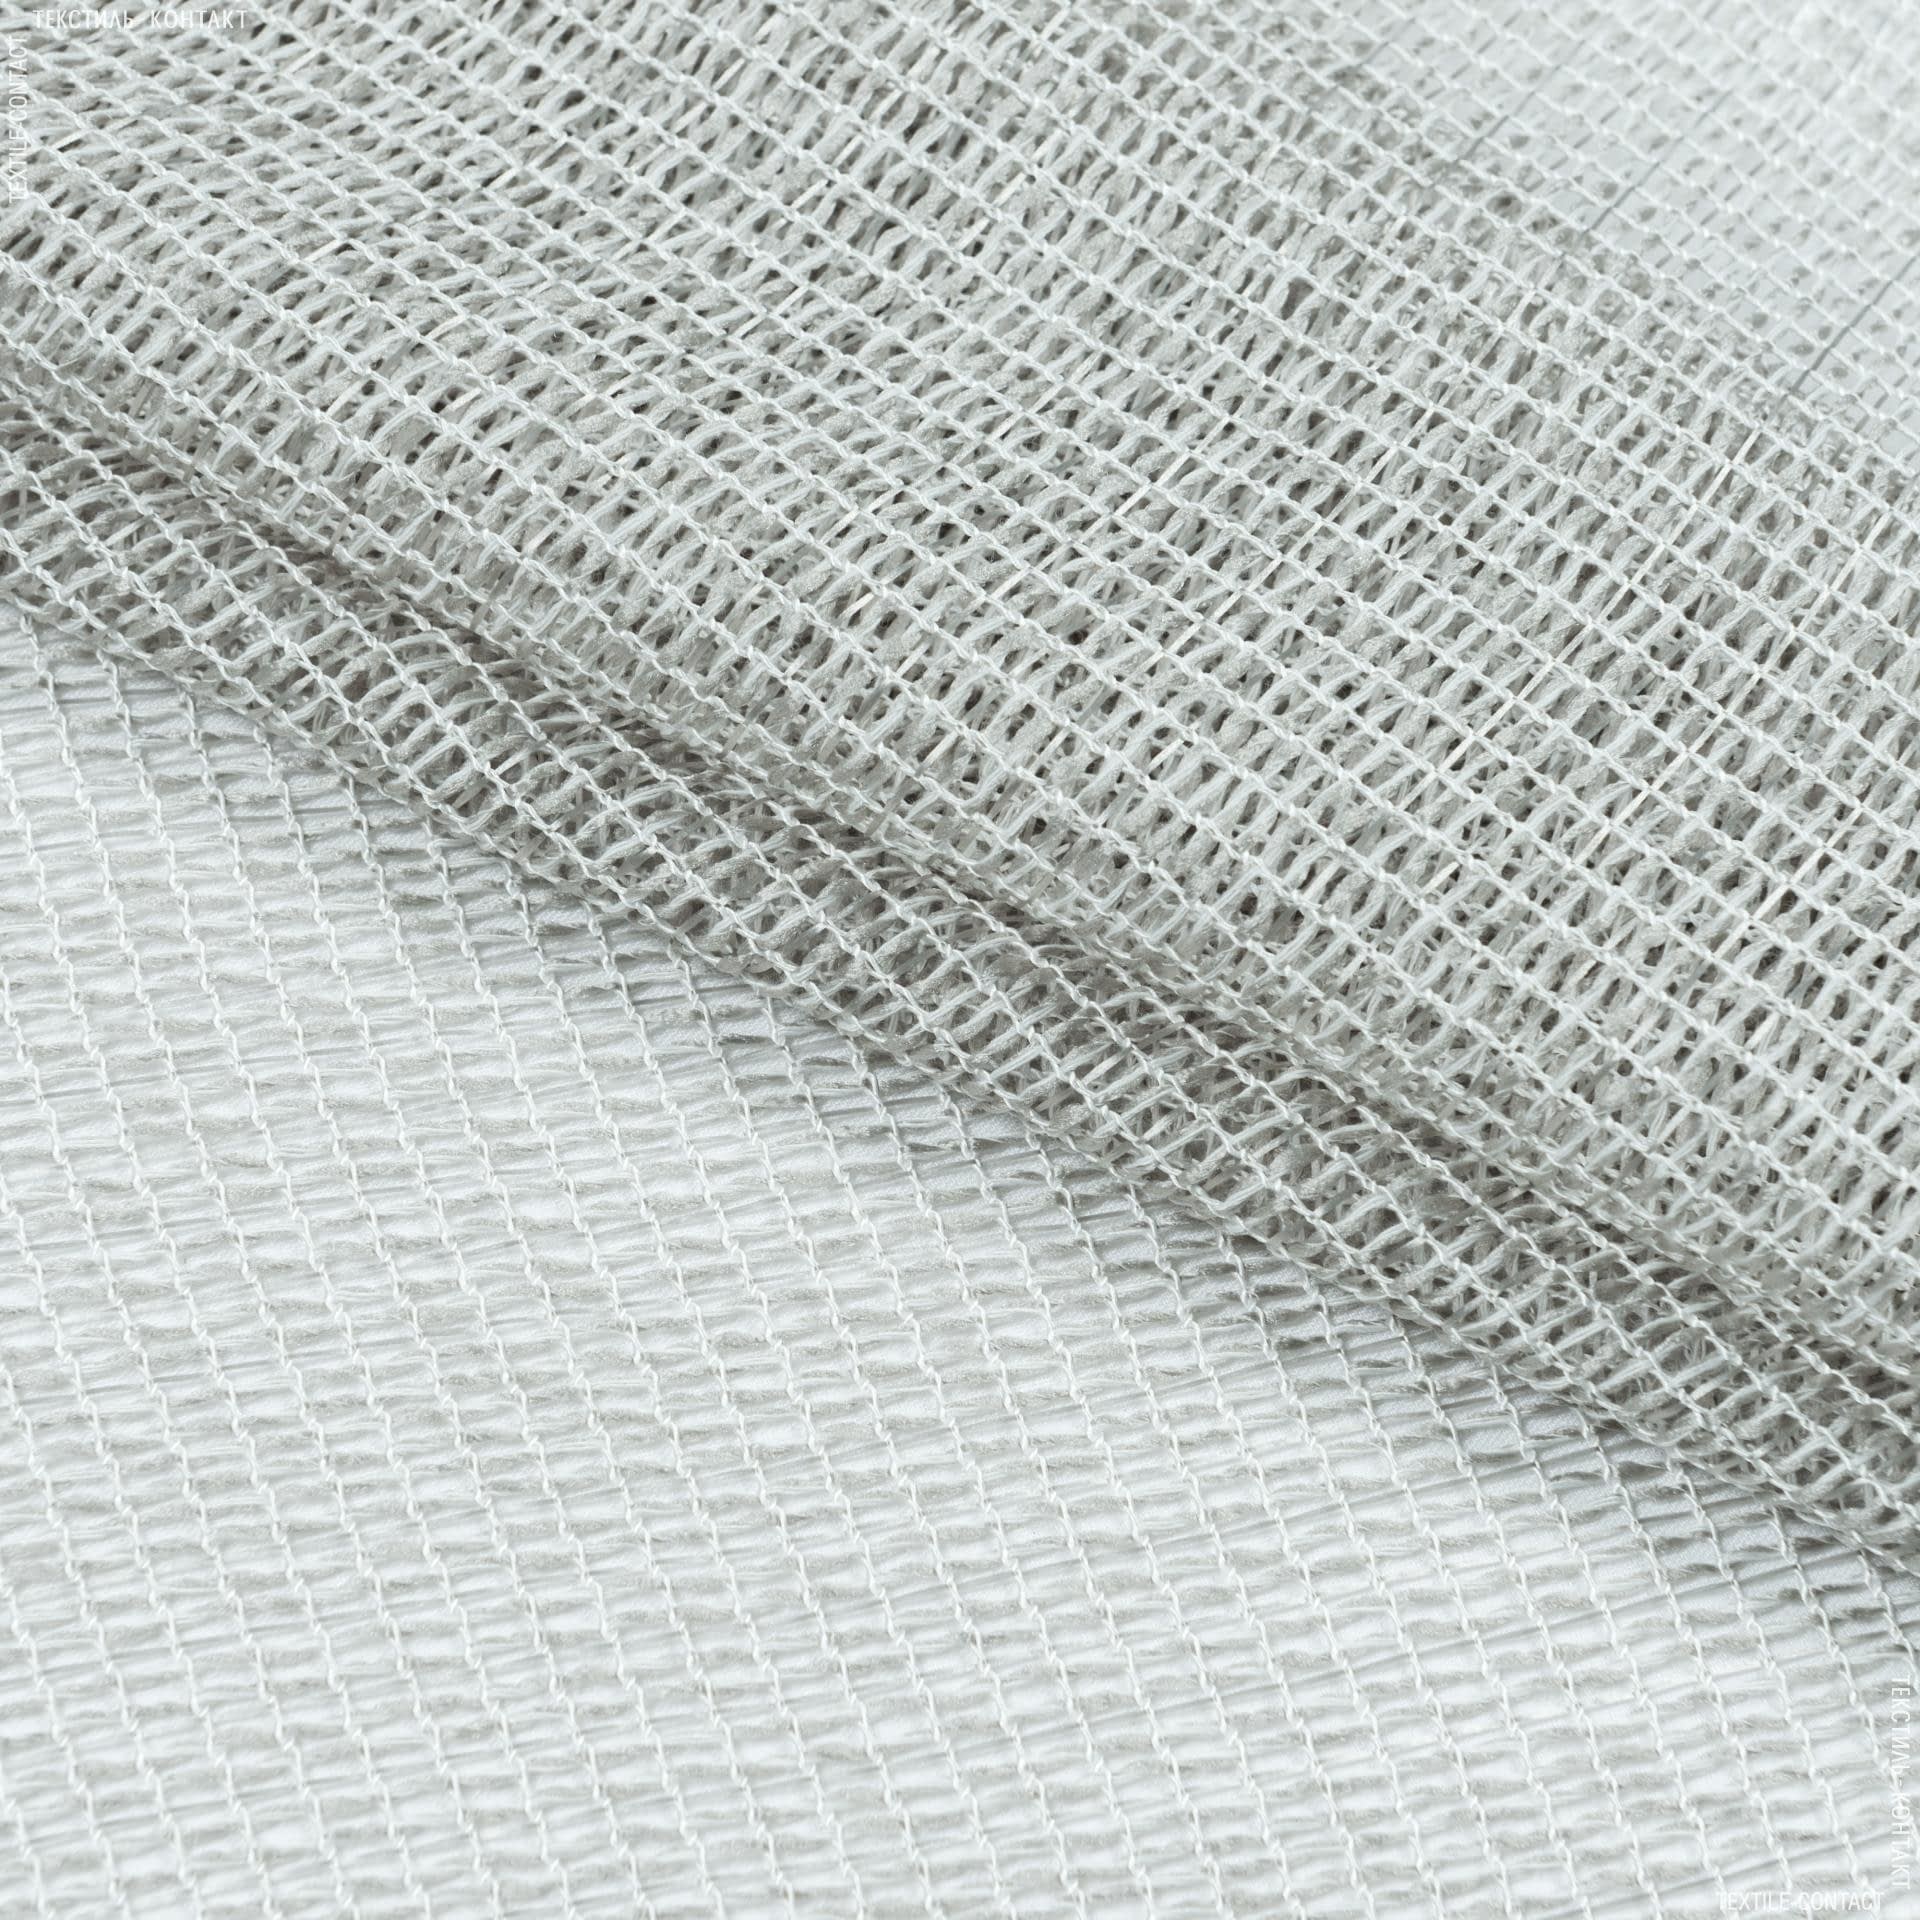 Ткани для рукоделия - Тюль сетка с утяжелителем  АФРА св. серый